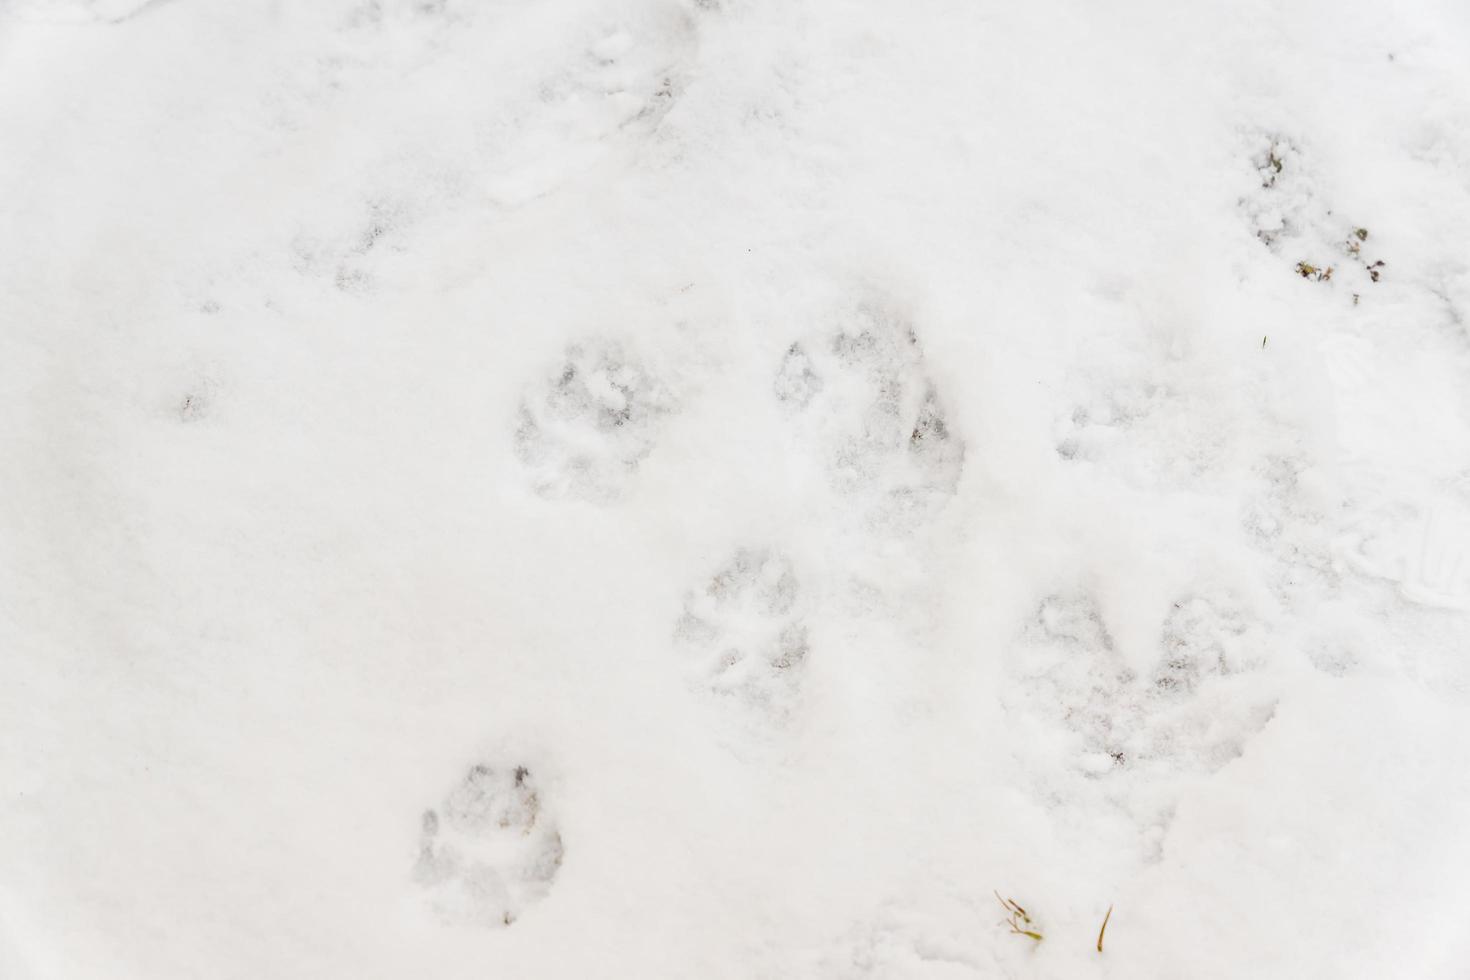 traces de chien sur la neige blanche photo